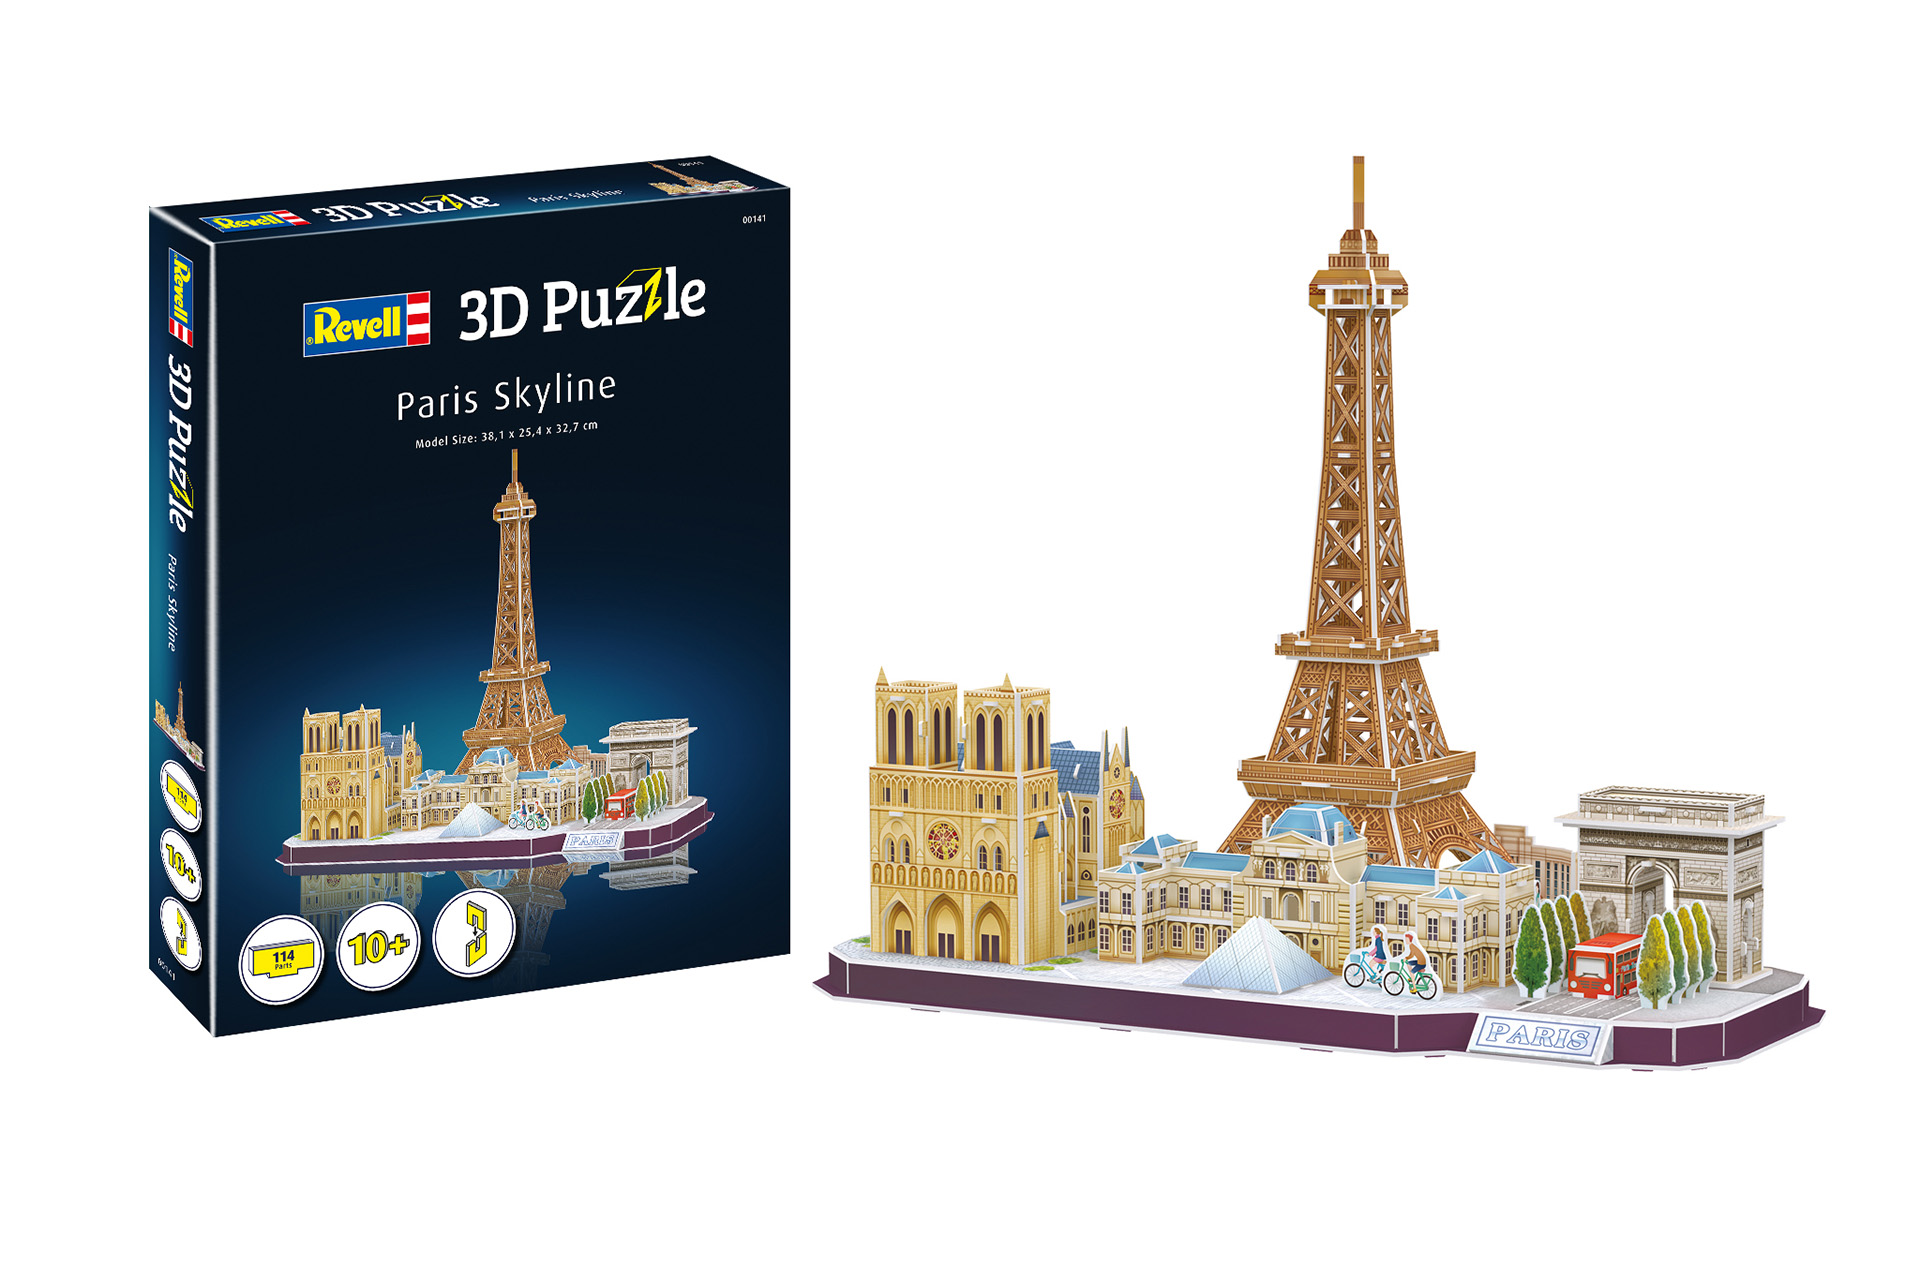 3D Puzzle Paris Skyline (00141)